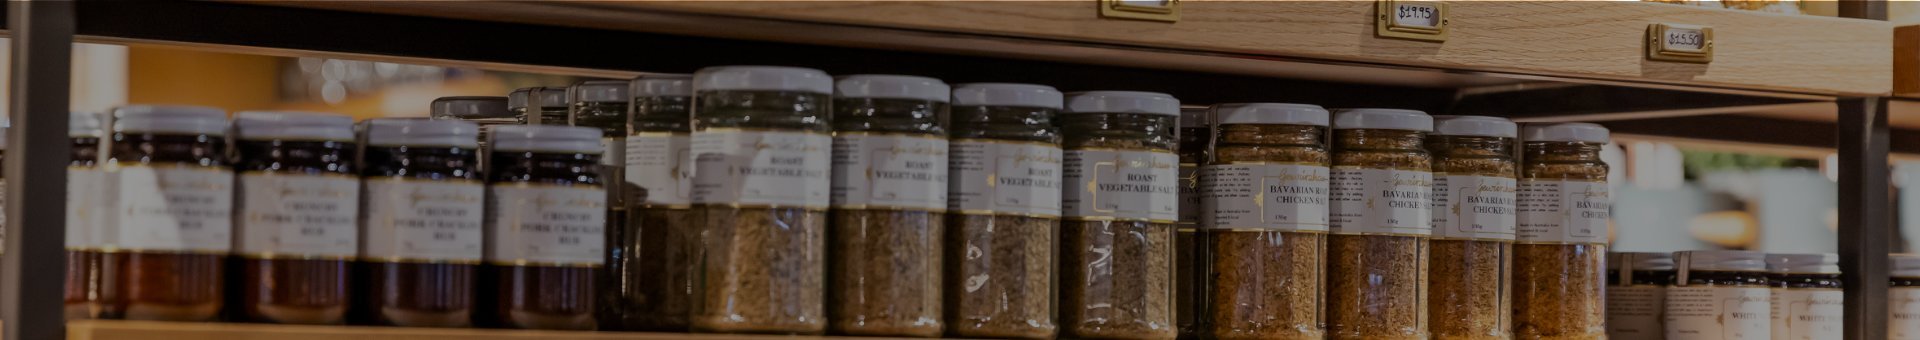 Herbs & Spices - Gewürzhaus